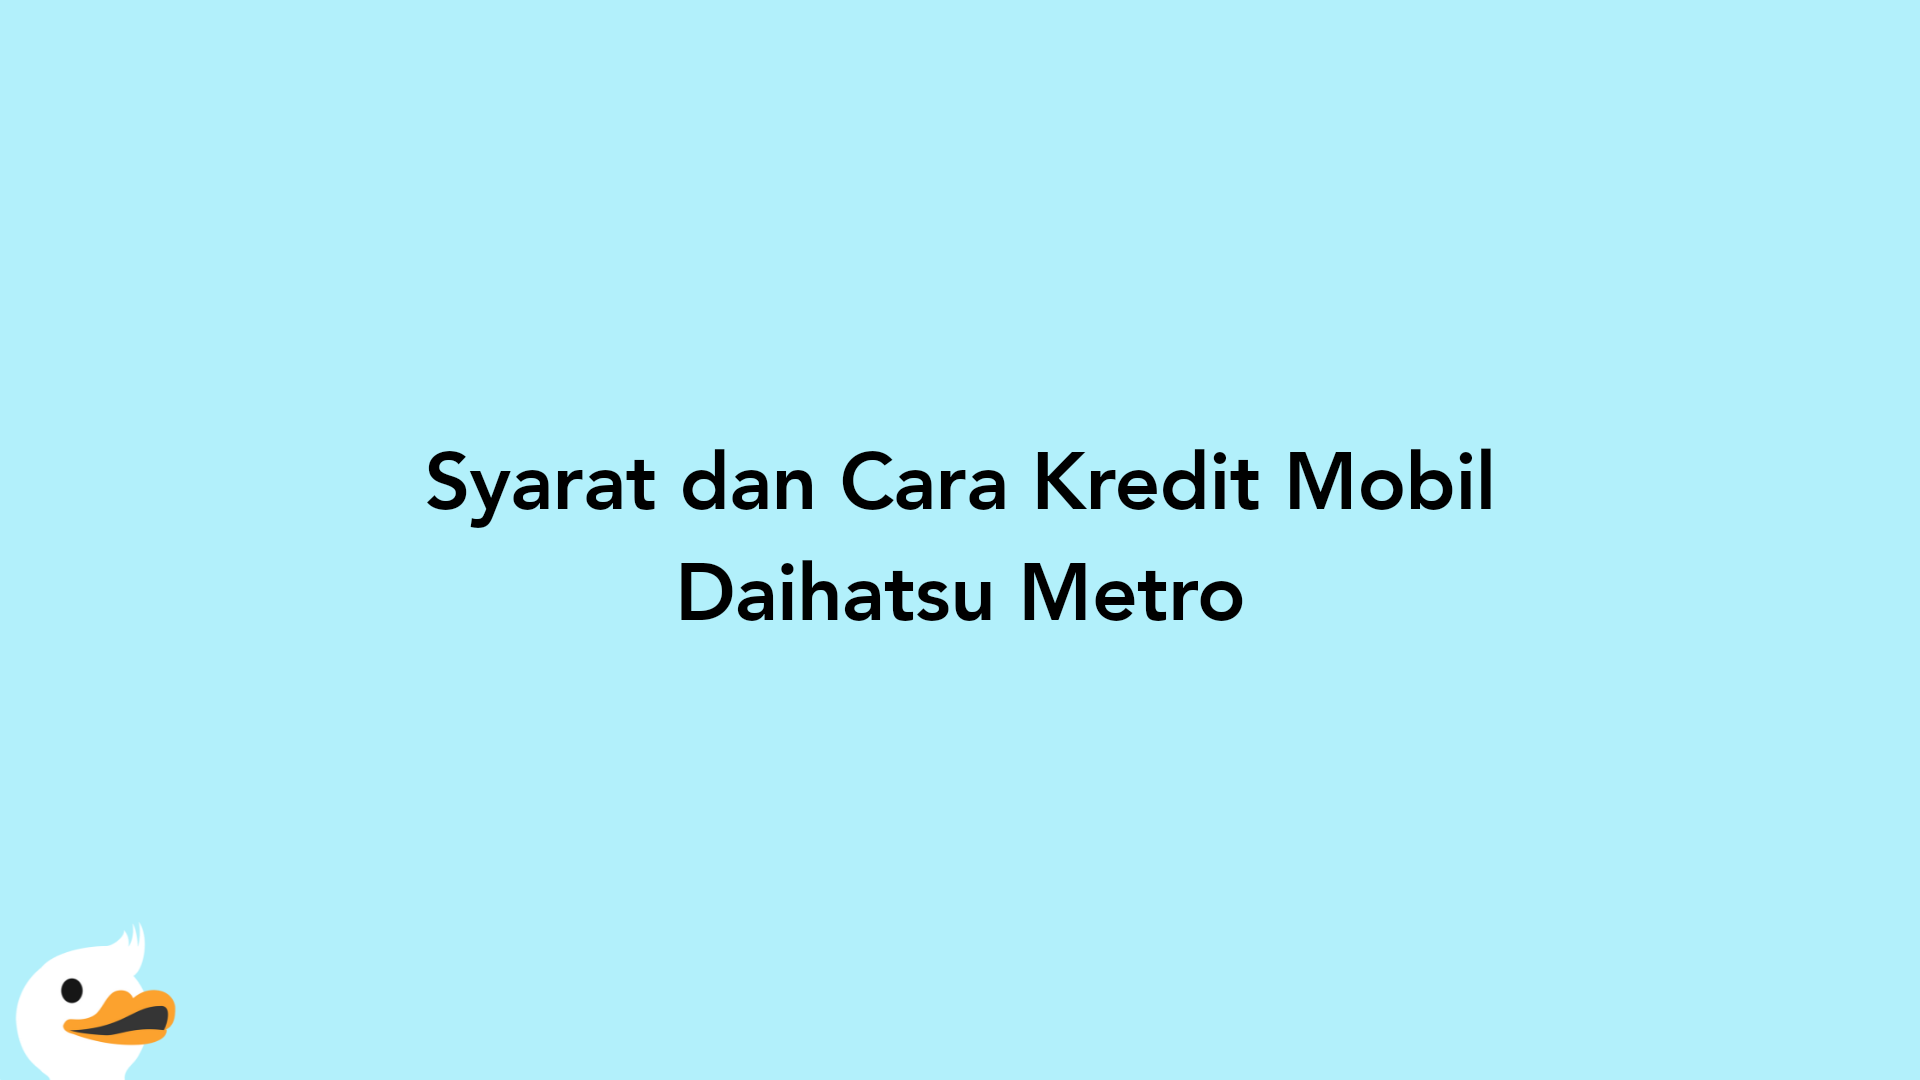 Syarat dan Cara Kredit Mobil Daihatsu Metro